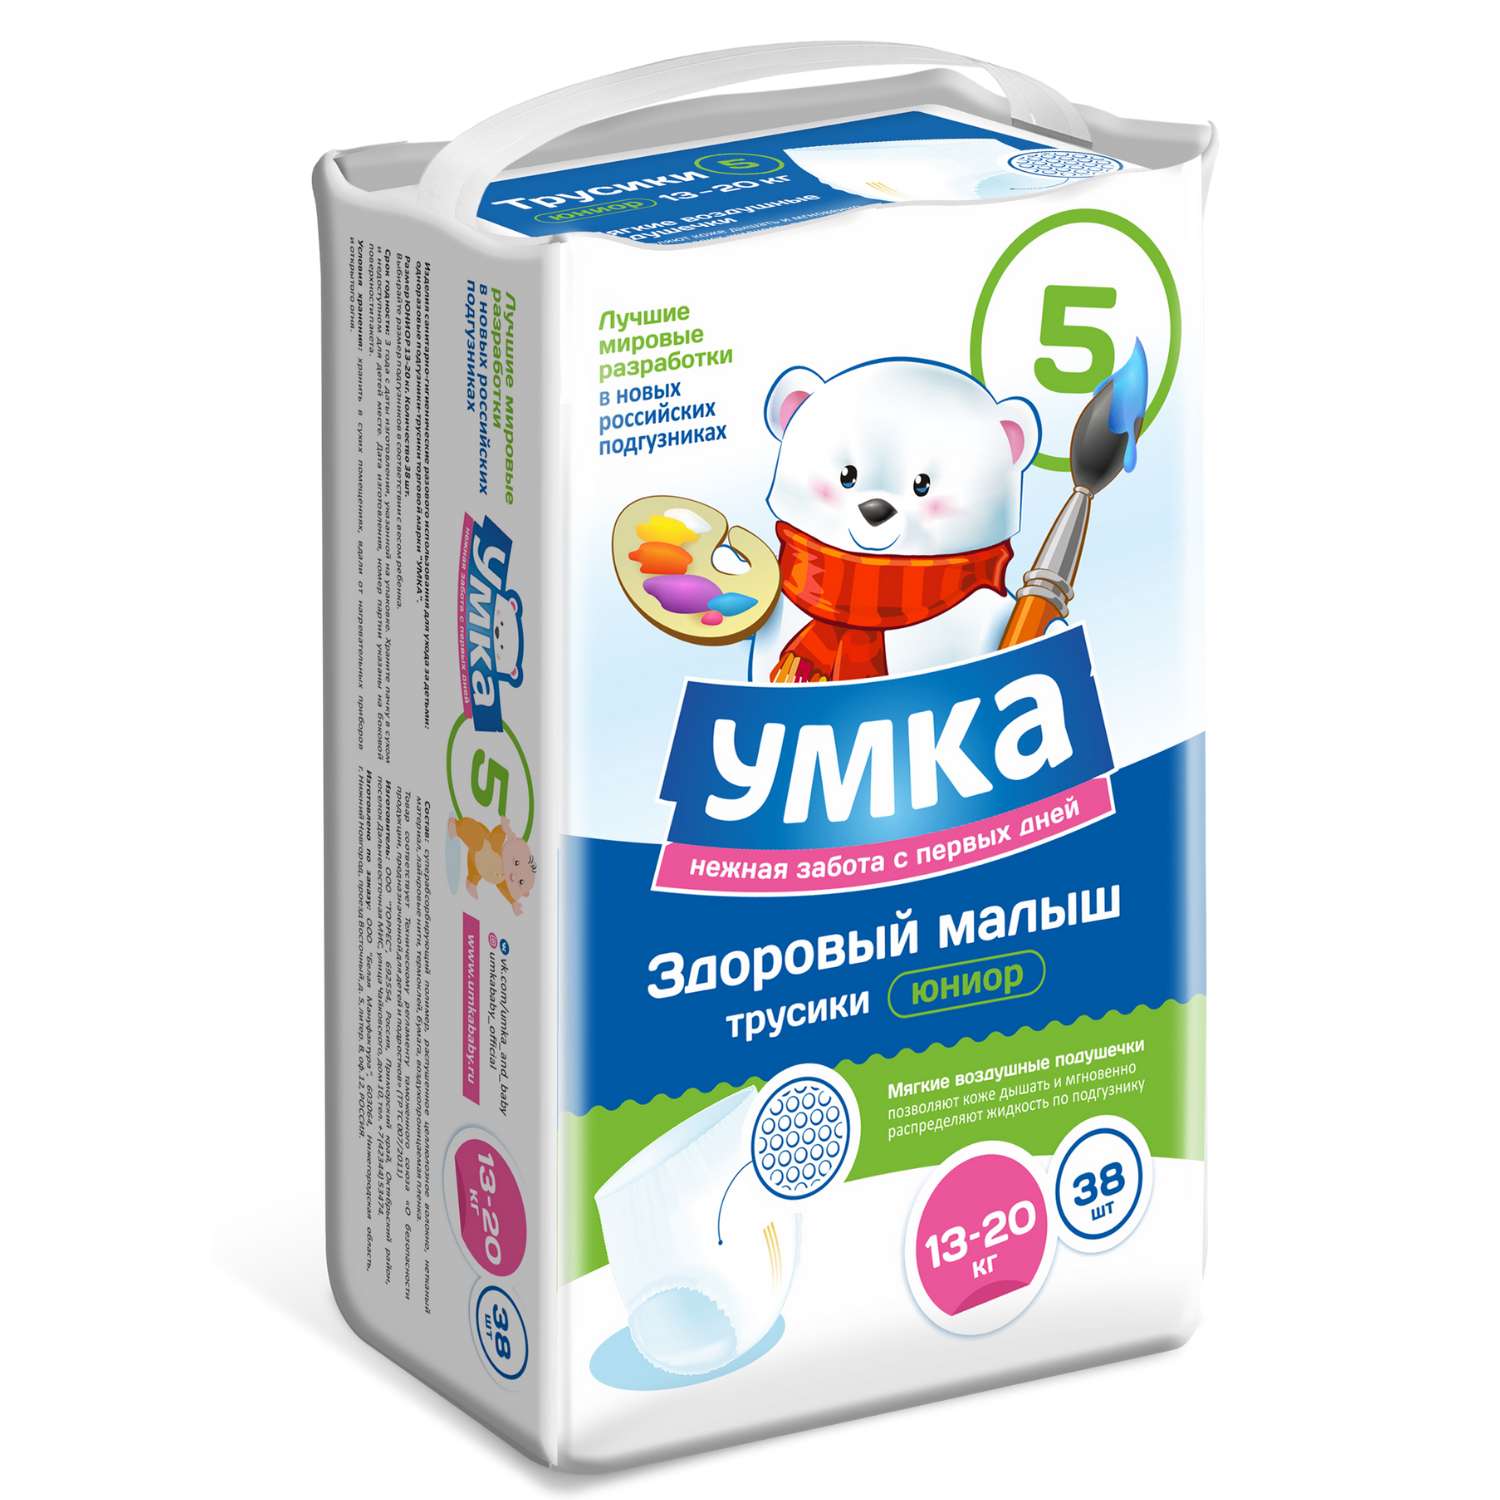 Где в группах ВКонтакте заказывают вещи?